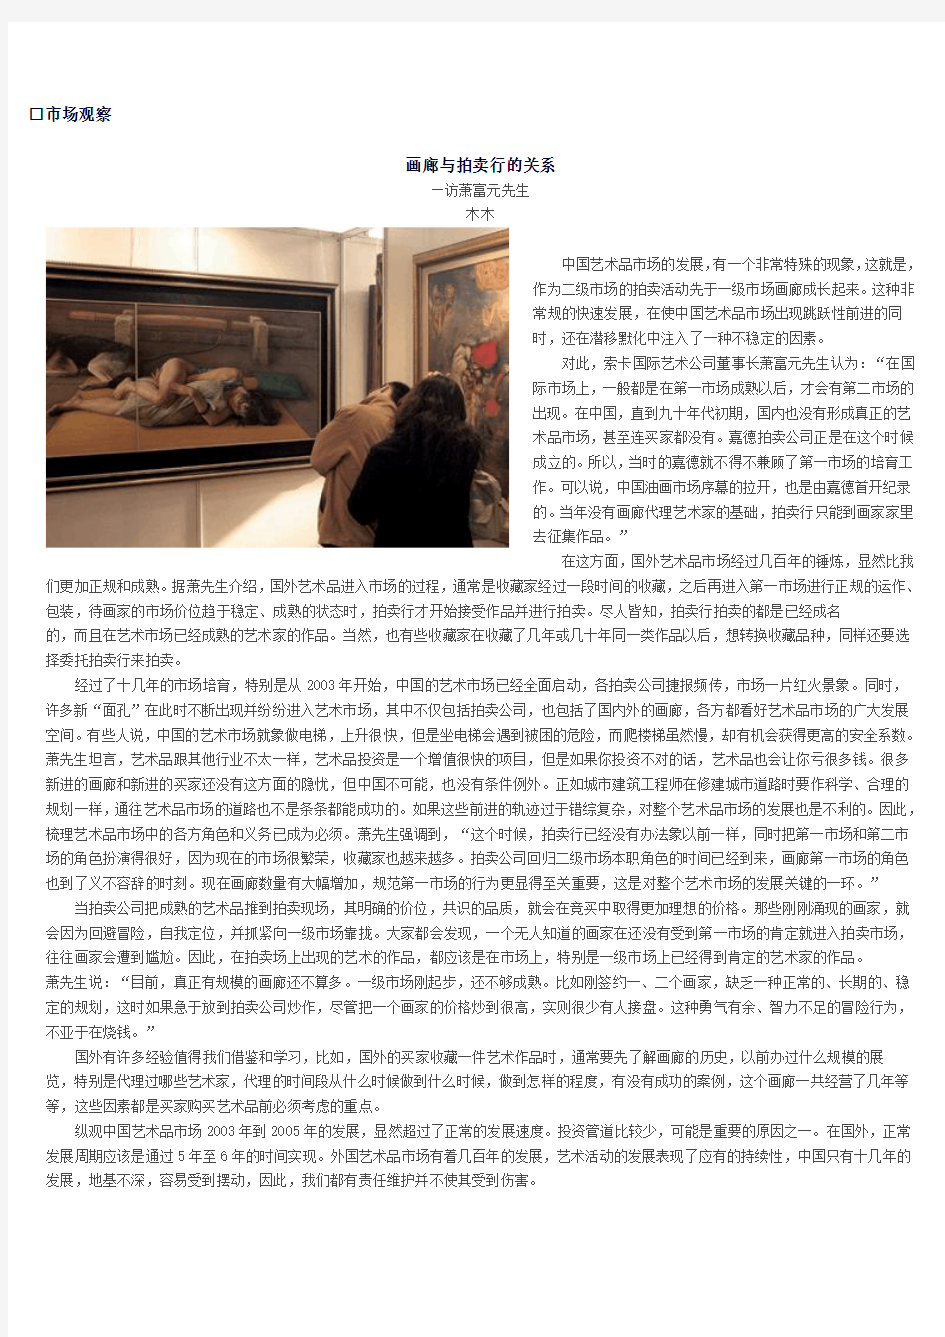 画廊与拍卖行的关系-中国嘉德